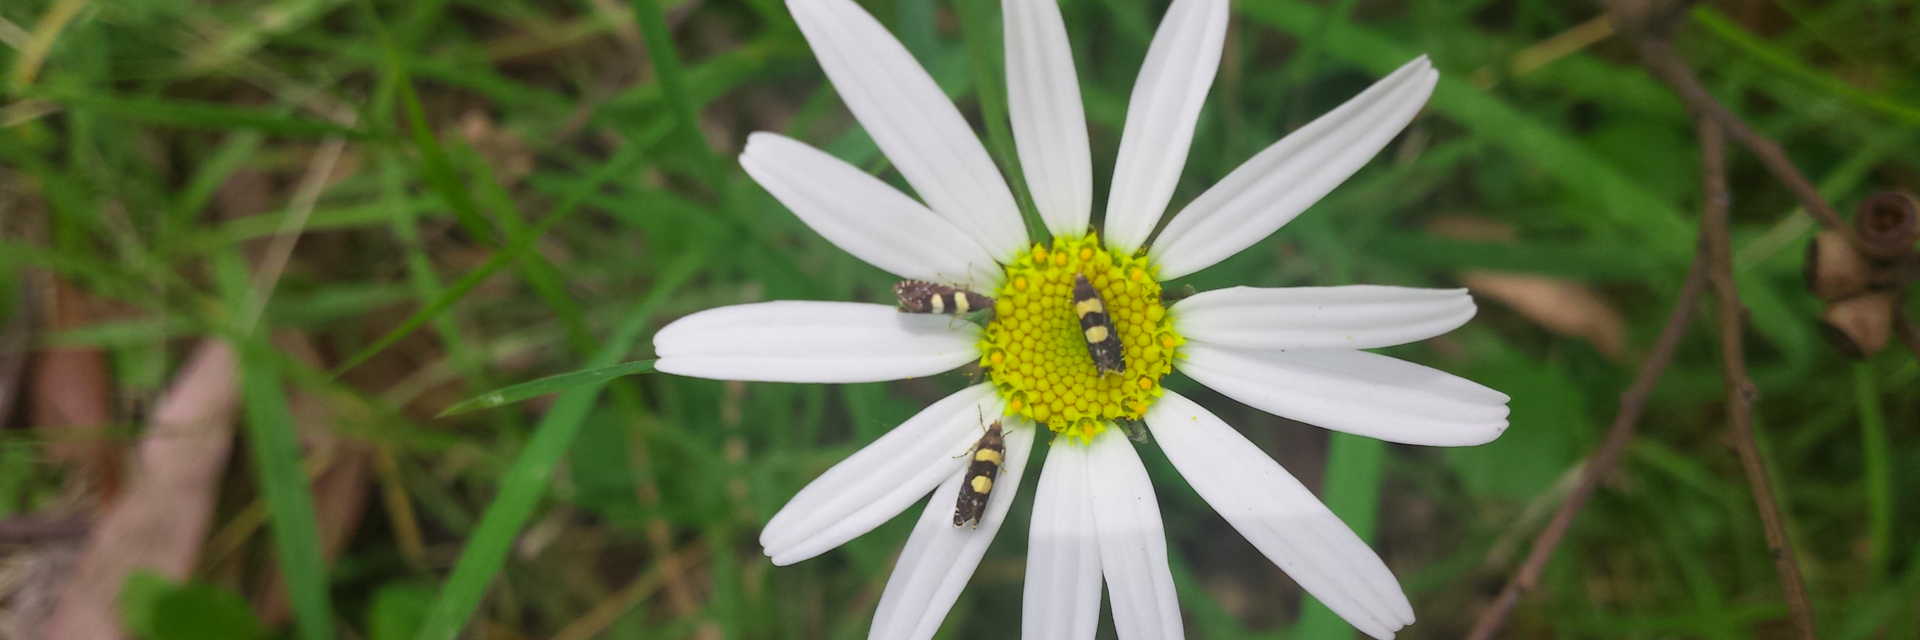 beetles inside white flower